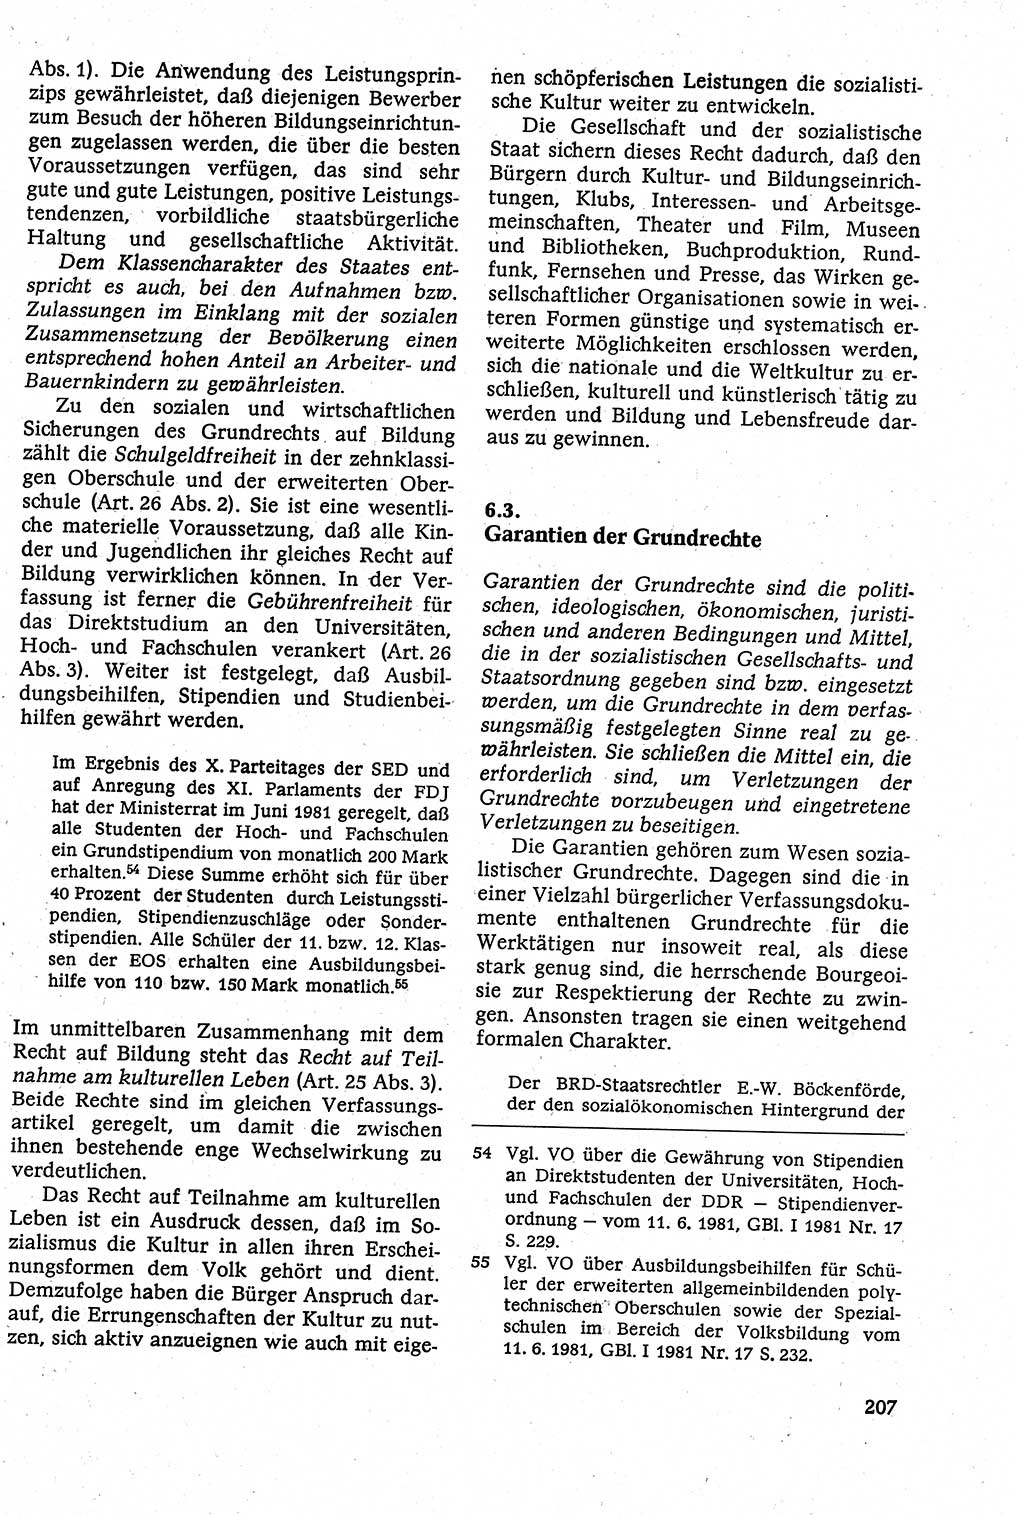 Staatsrecht der DDR [Deutsche Demokratische Republik (DDR)], Lehrbuch 1984, Seite 207 (St.-R. DDR Lb. 1984, S. 207)